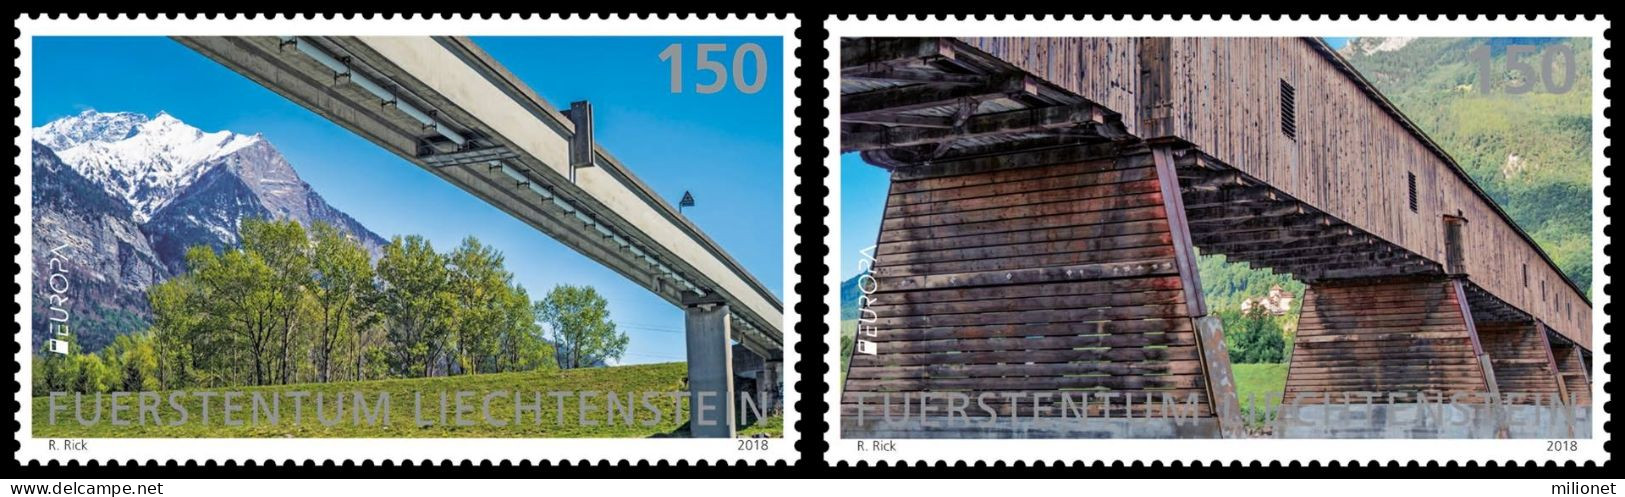 SALE!!! LIECHTENSTEIN 2018 EUROPA CEPT BRIDGES 2 Stamps Set MNH ** - 2018